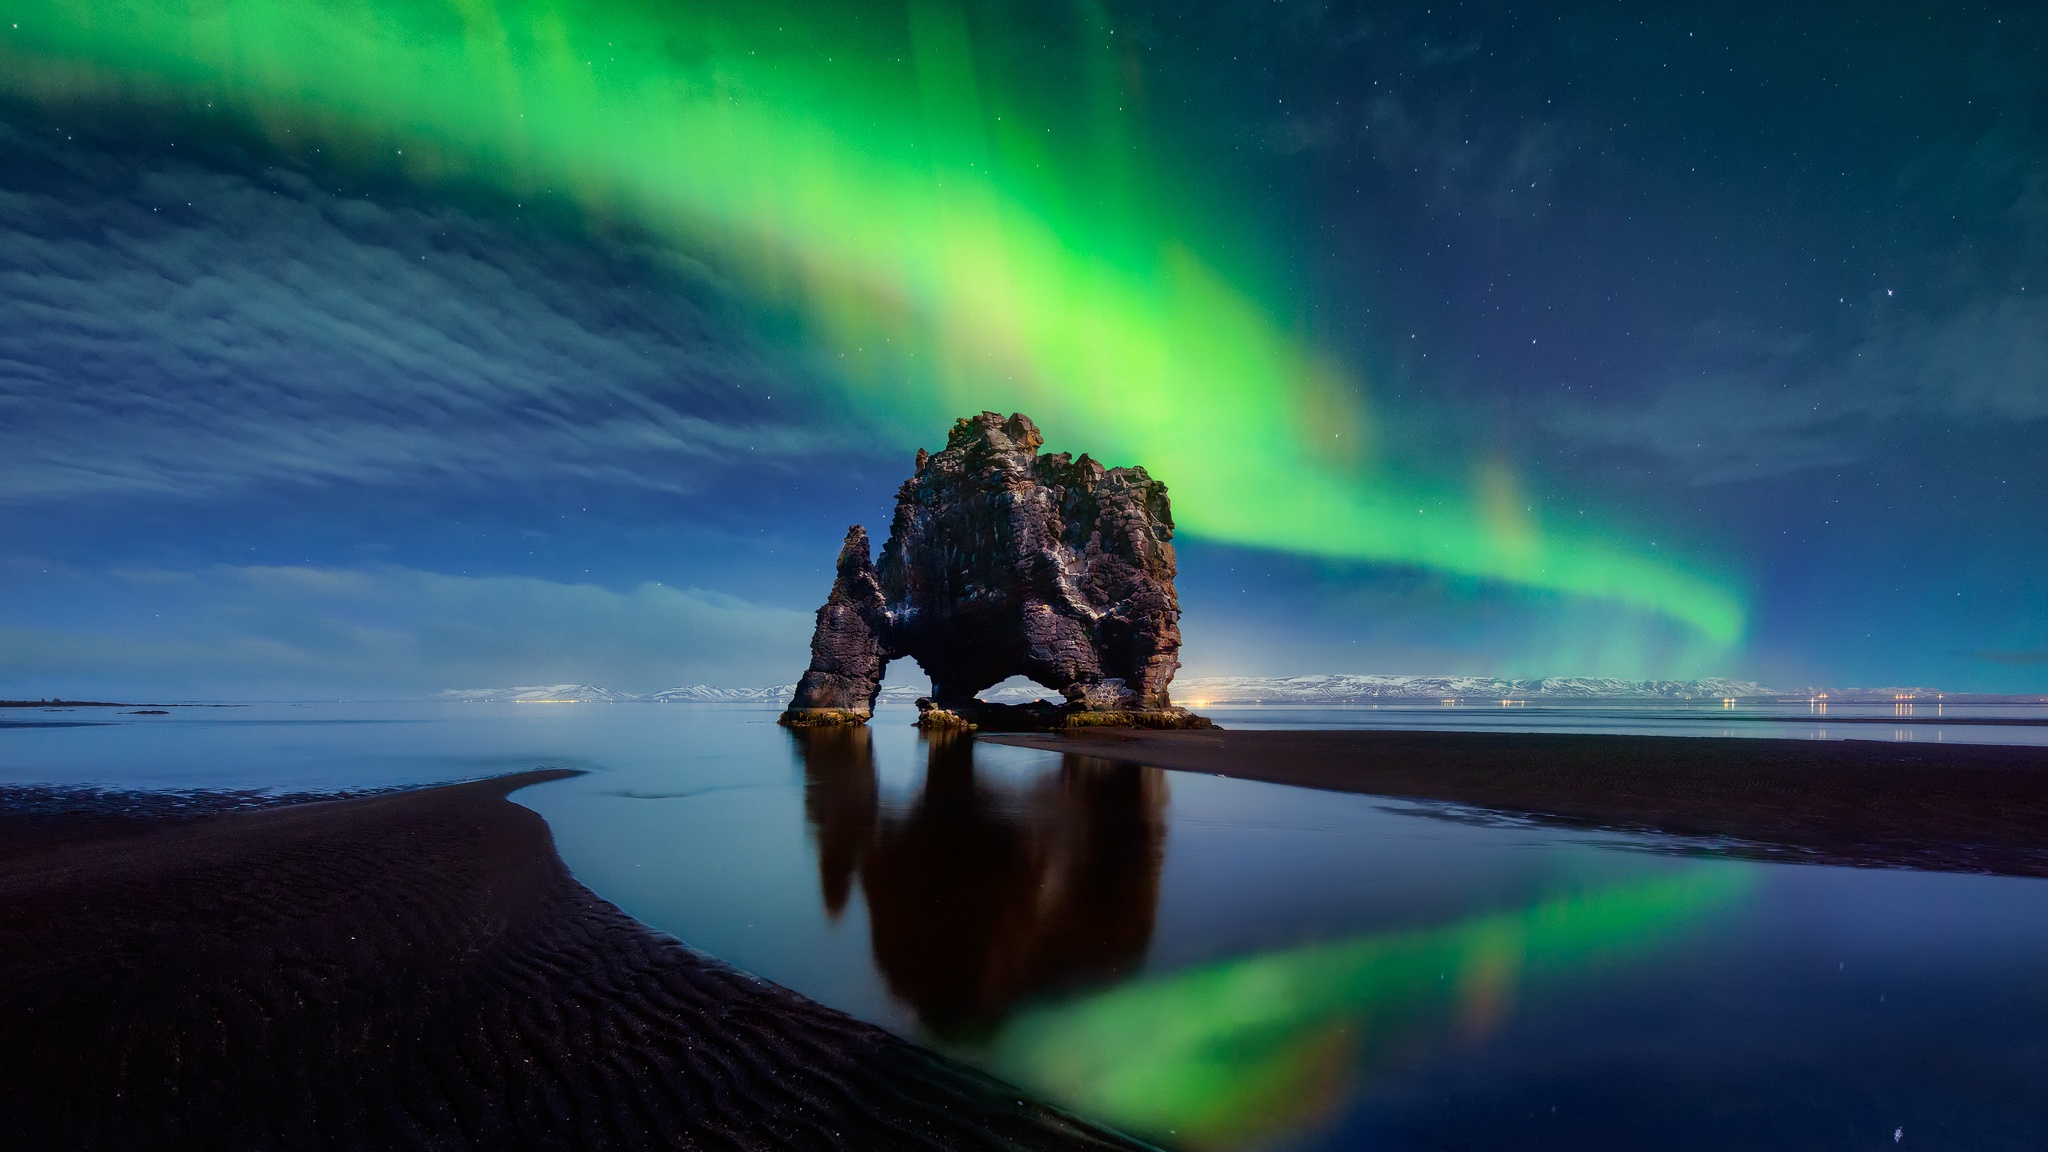 Скачать обои бесплатно Ночь, Арка, Северное Сияние, Исландия, Земля/природа картинка на рабочий стол ПК